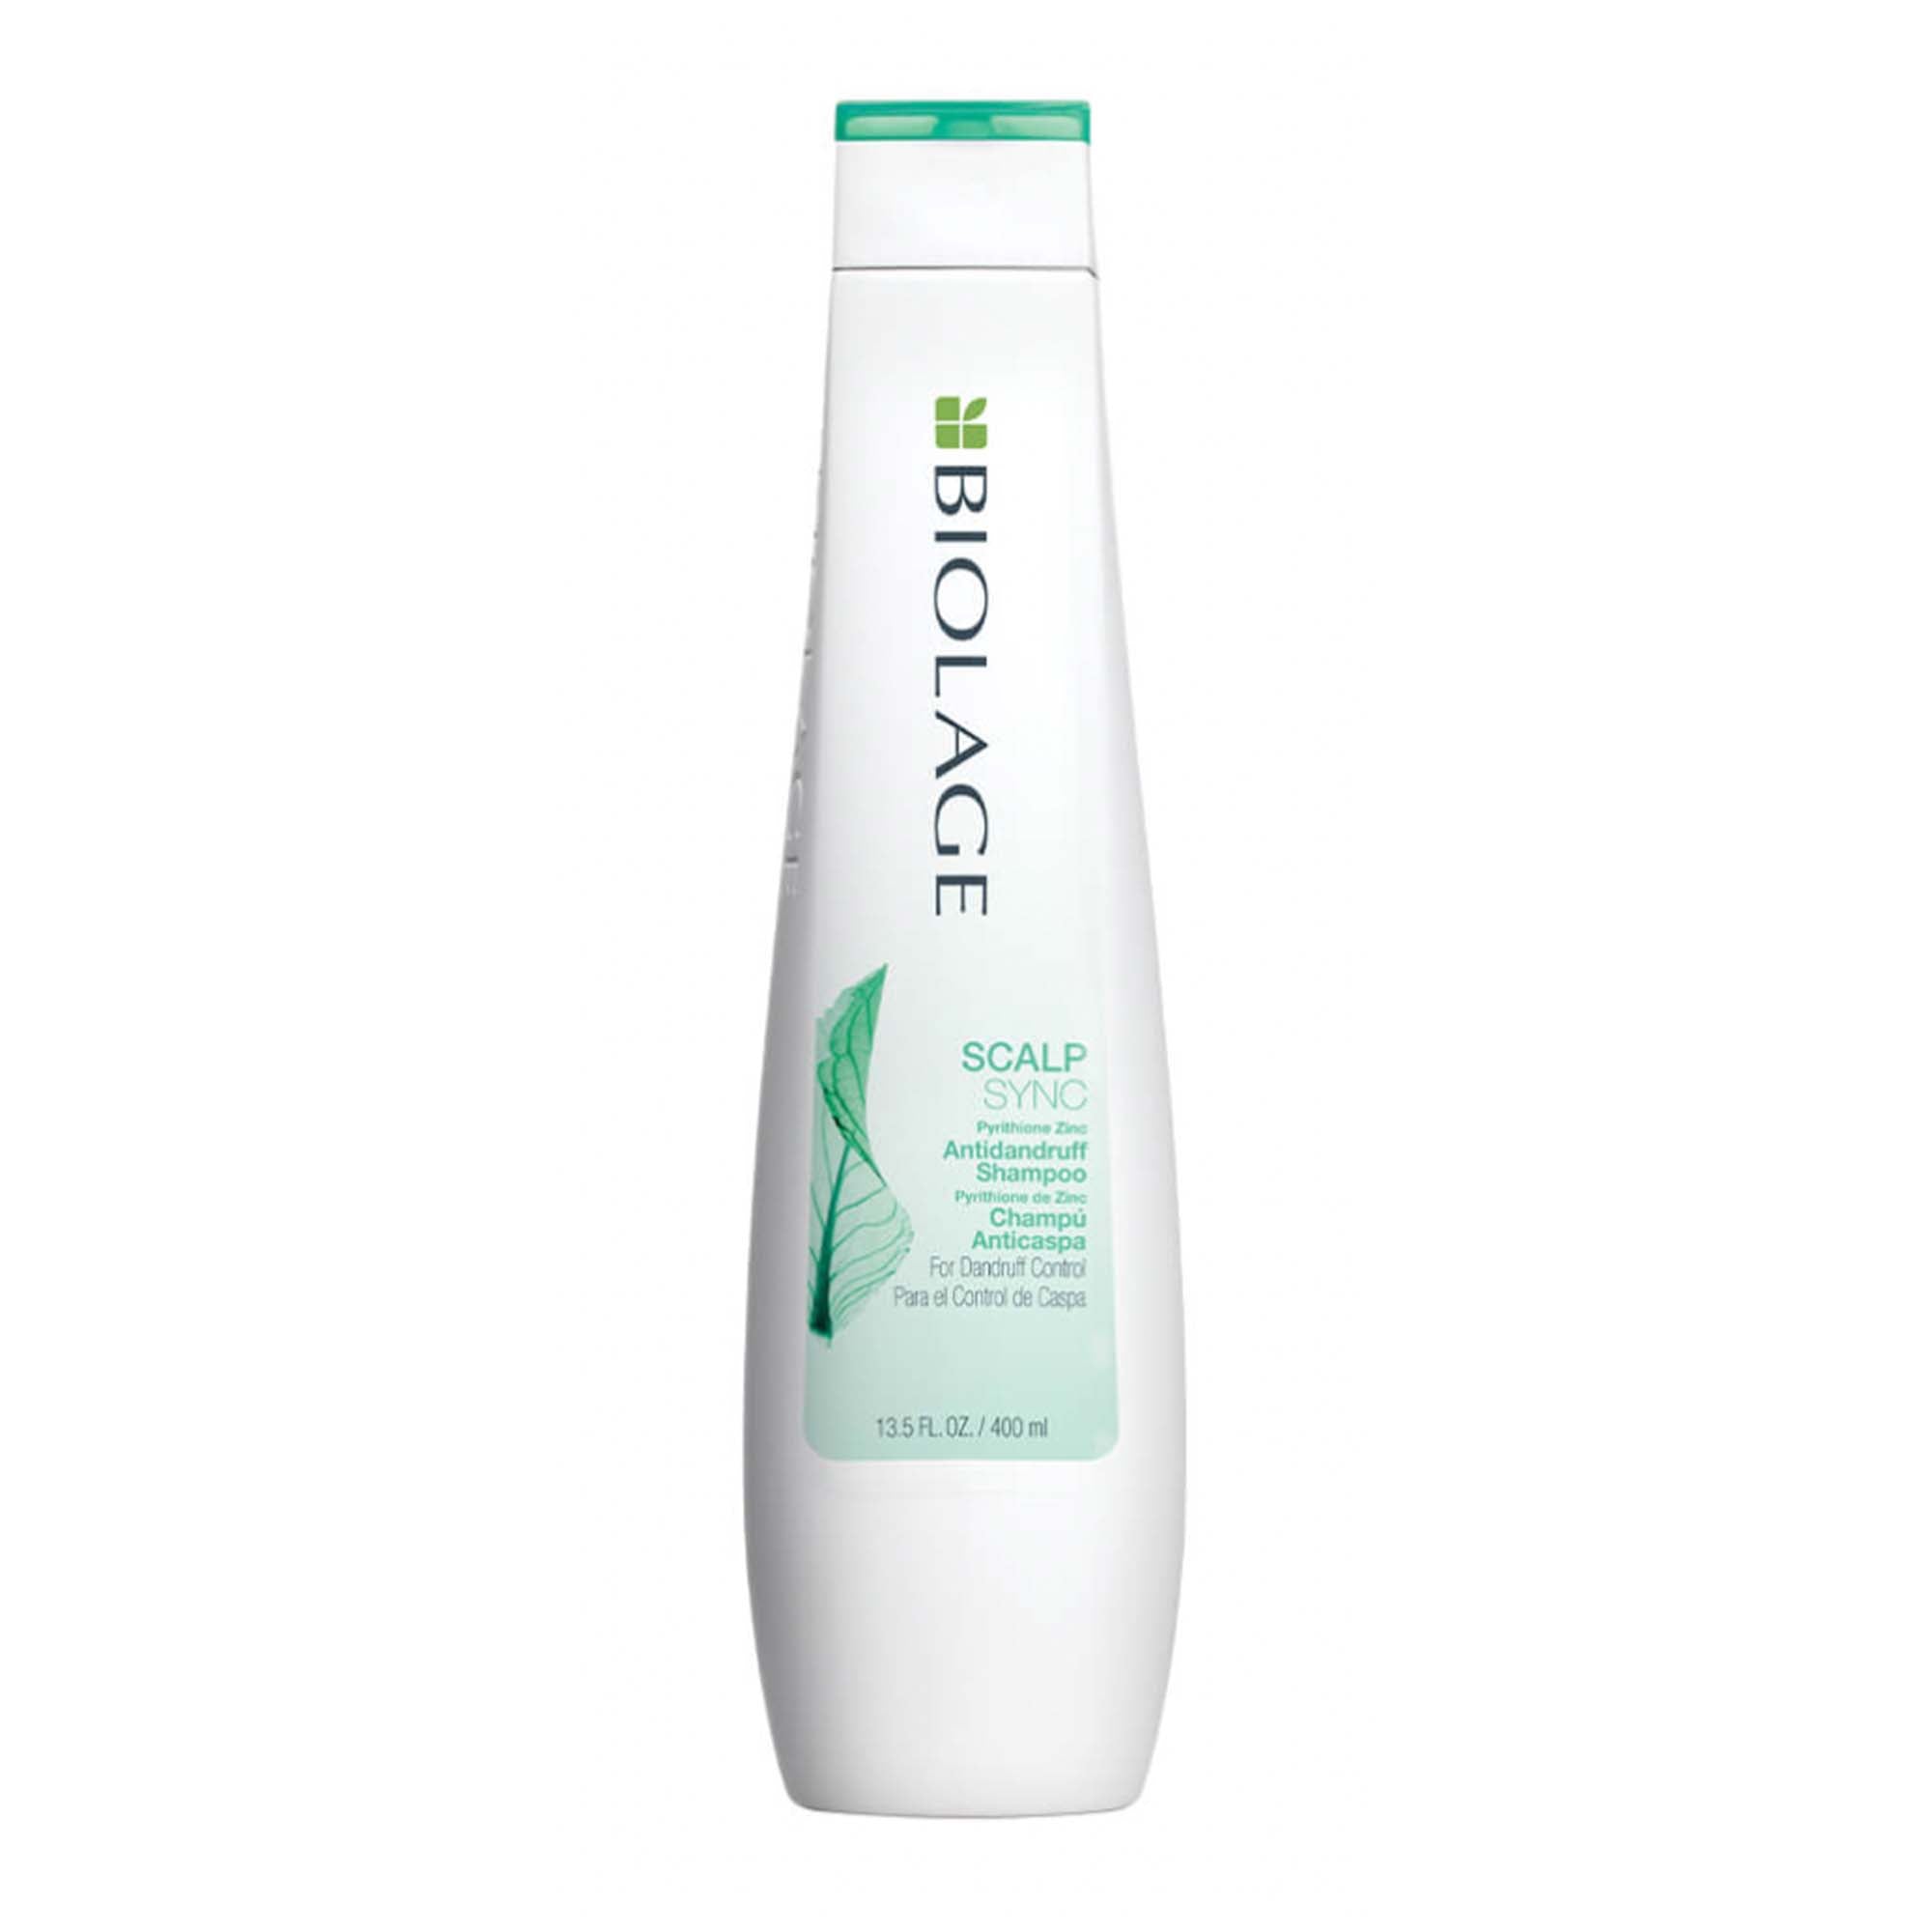 Biolage Scalp Sync Antidandruff Shampoo 13.5oz